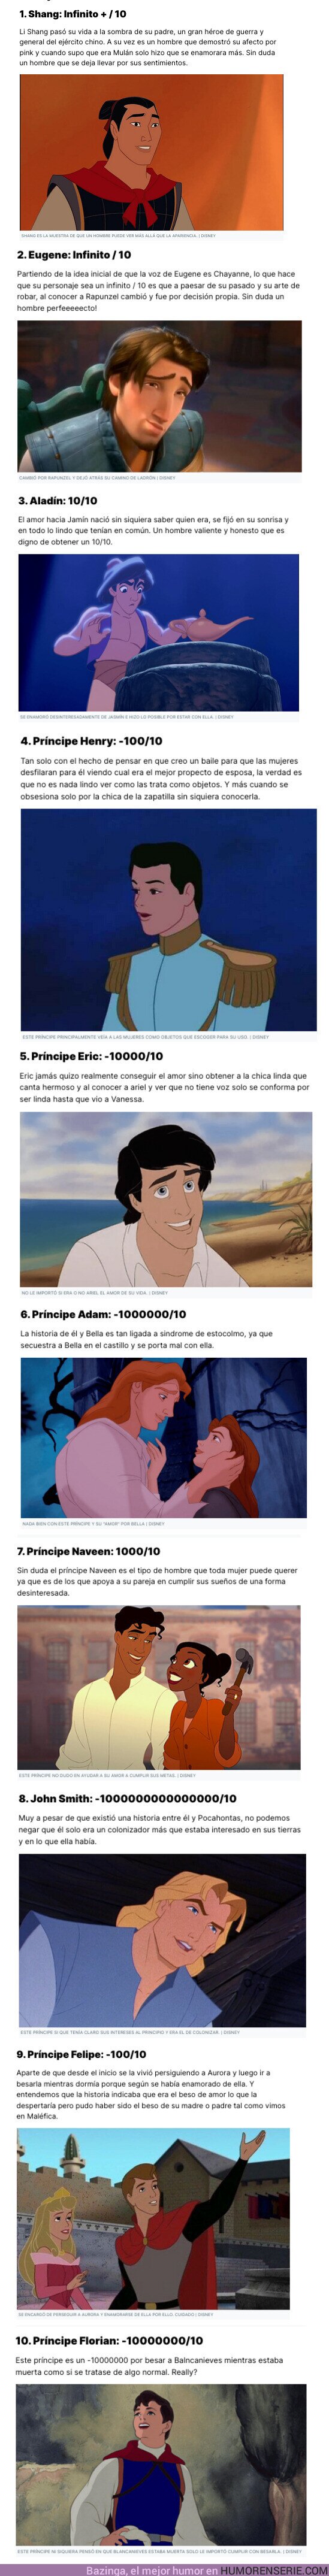 128066 - GALERÍA: Ponemos nota a los príncipes de Disney sin miedo al qué dirán